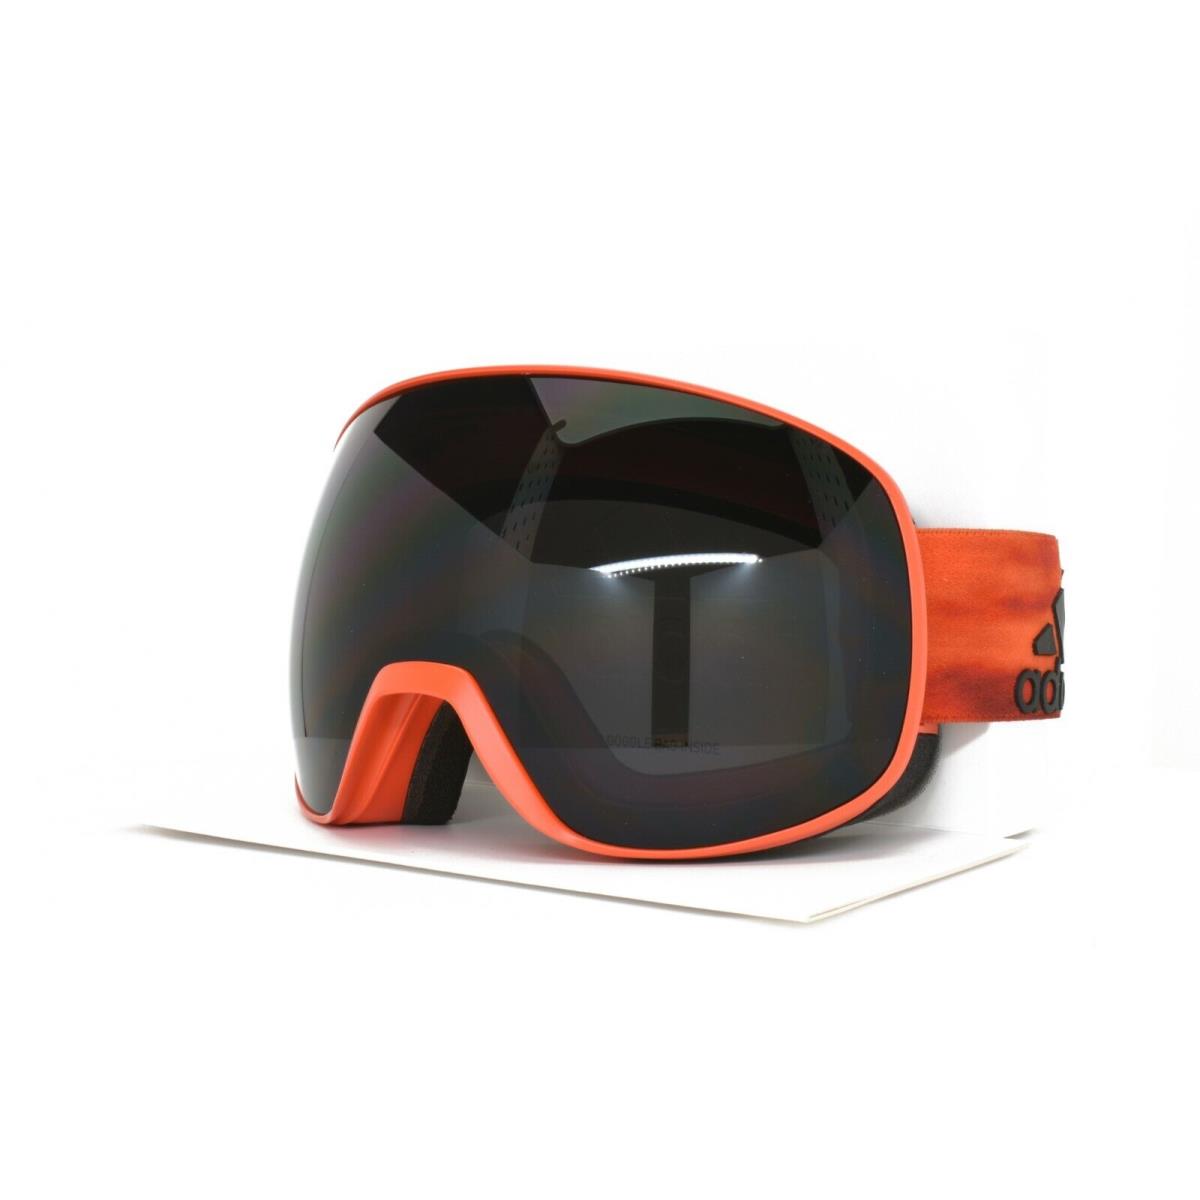 Adidas Snow Goggles Antifog Orange 82 50 6060